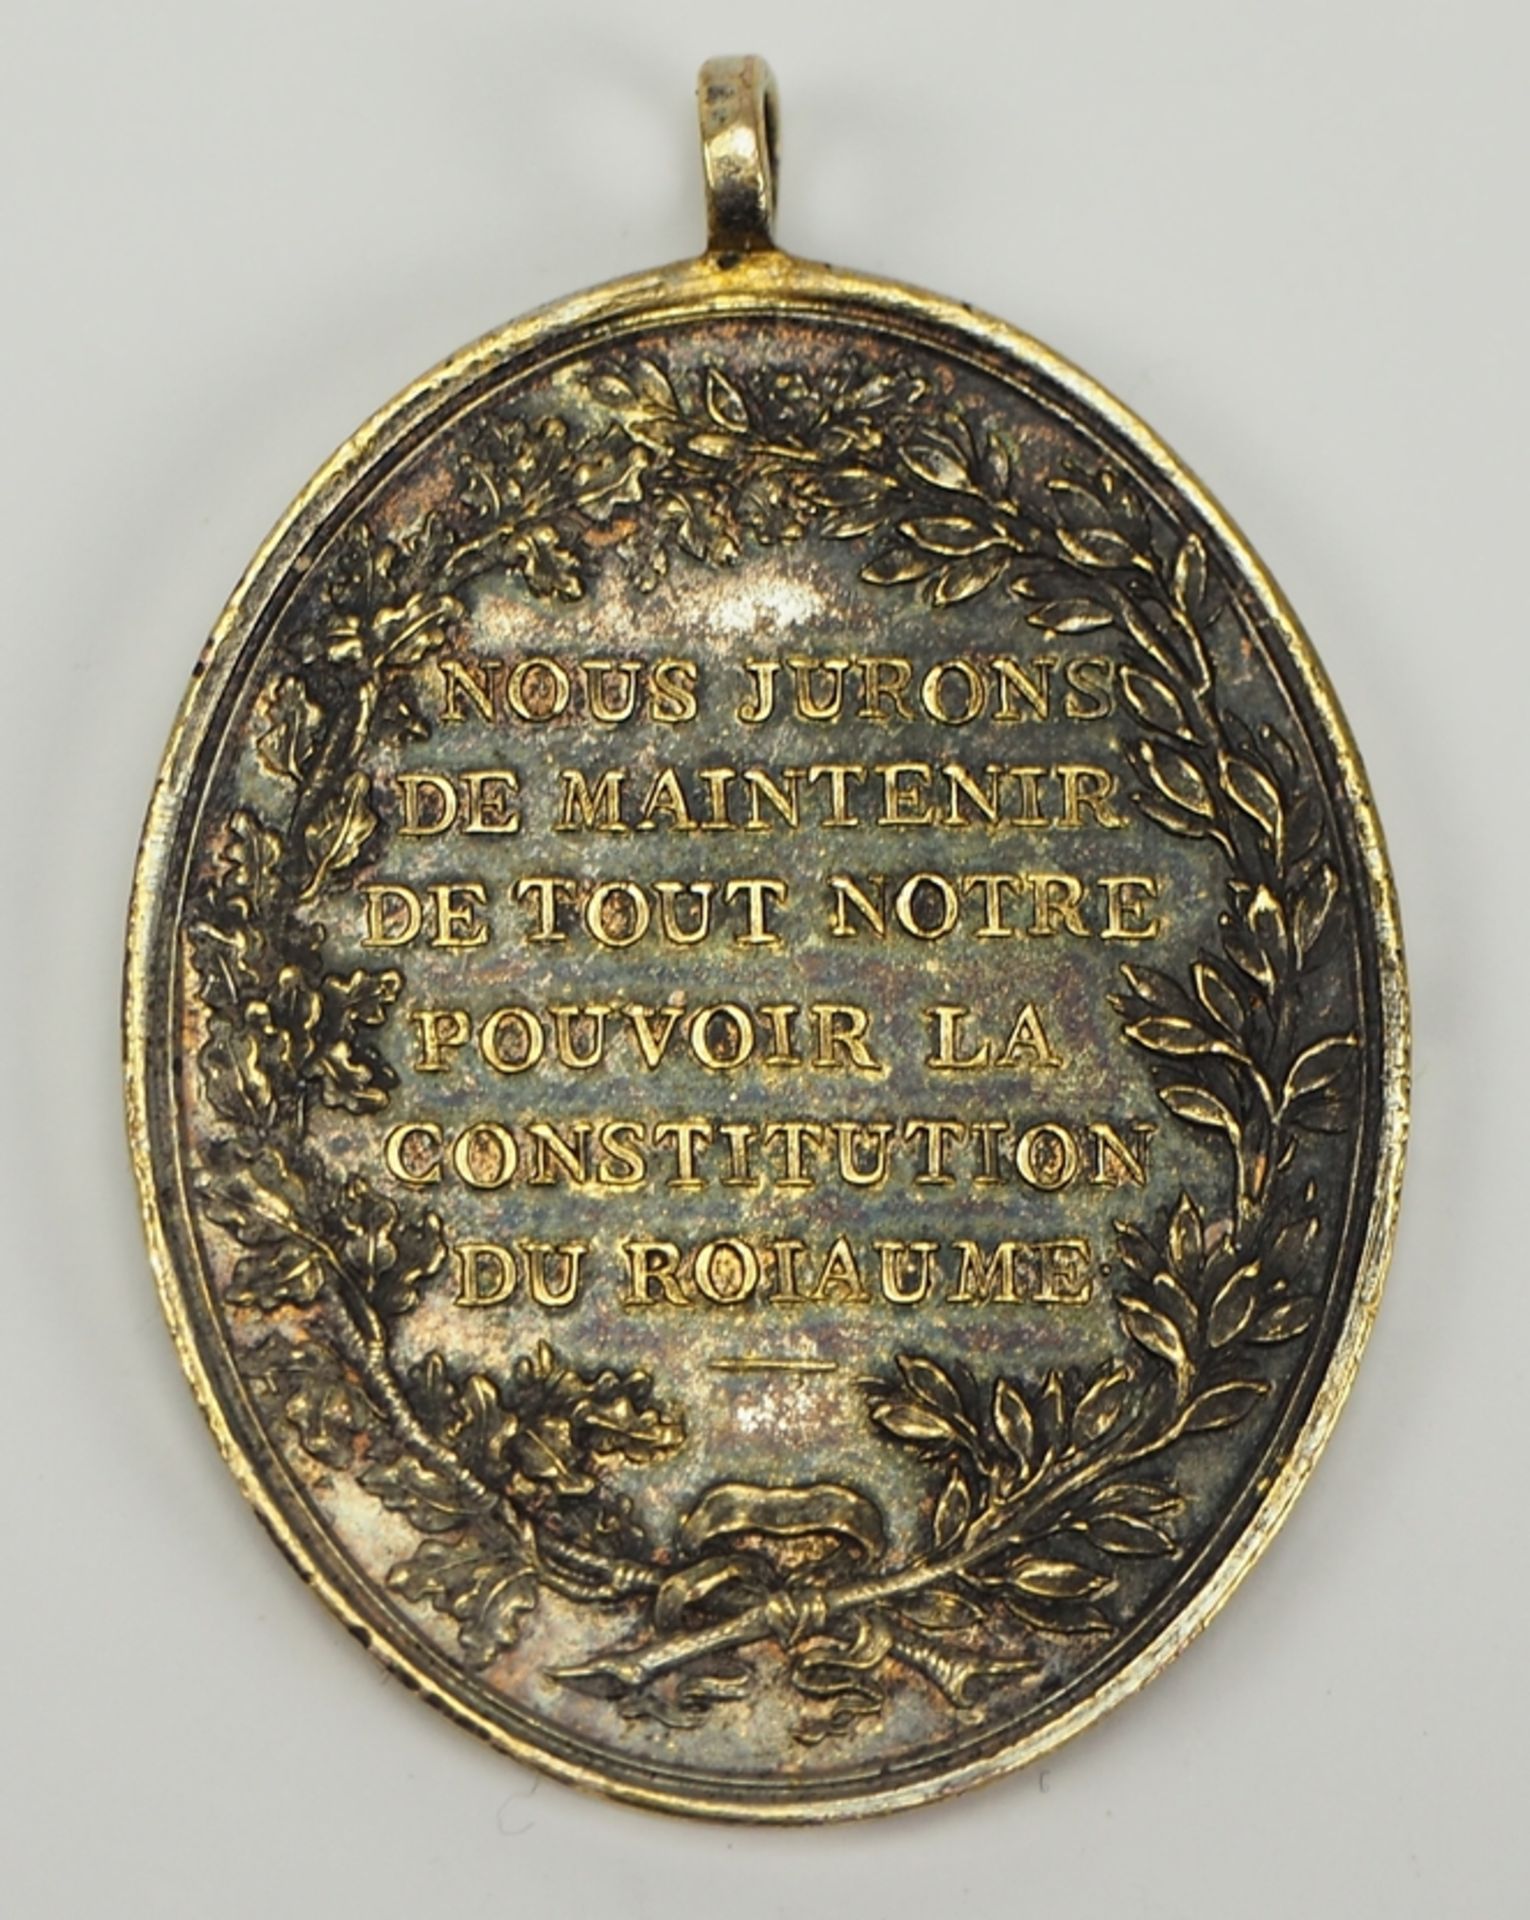 Frankreich: Medaille zur Erinnerung an das Förderationsfest auf dem Marsfeld für die Marine, 1790. - Image 2 of 2